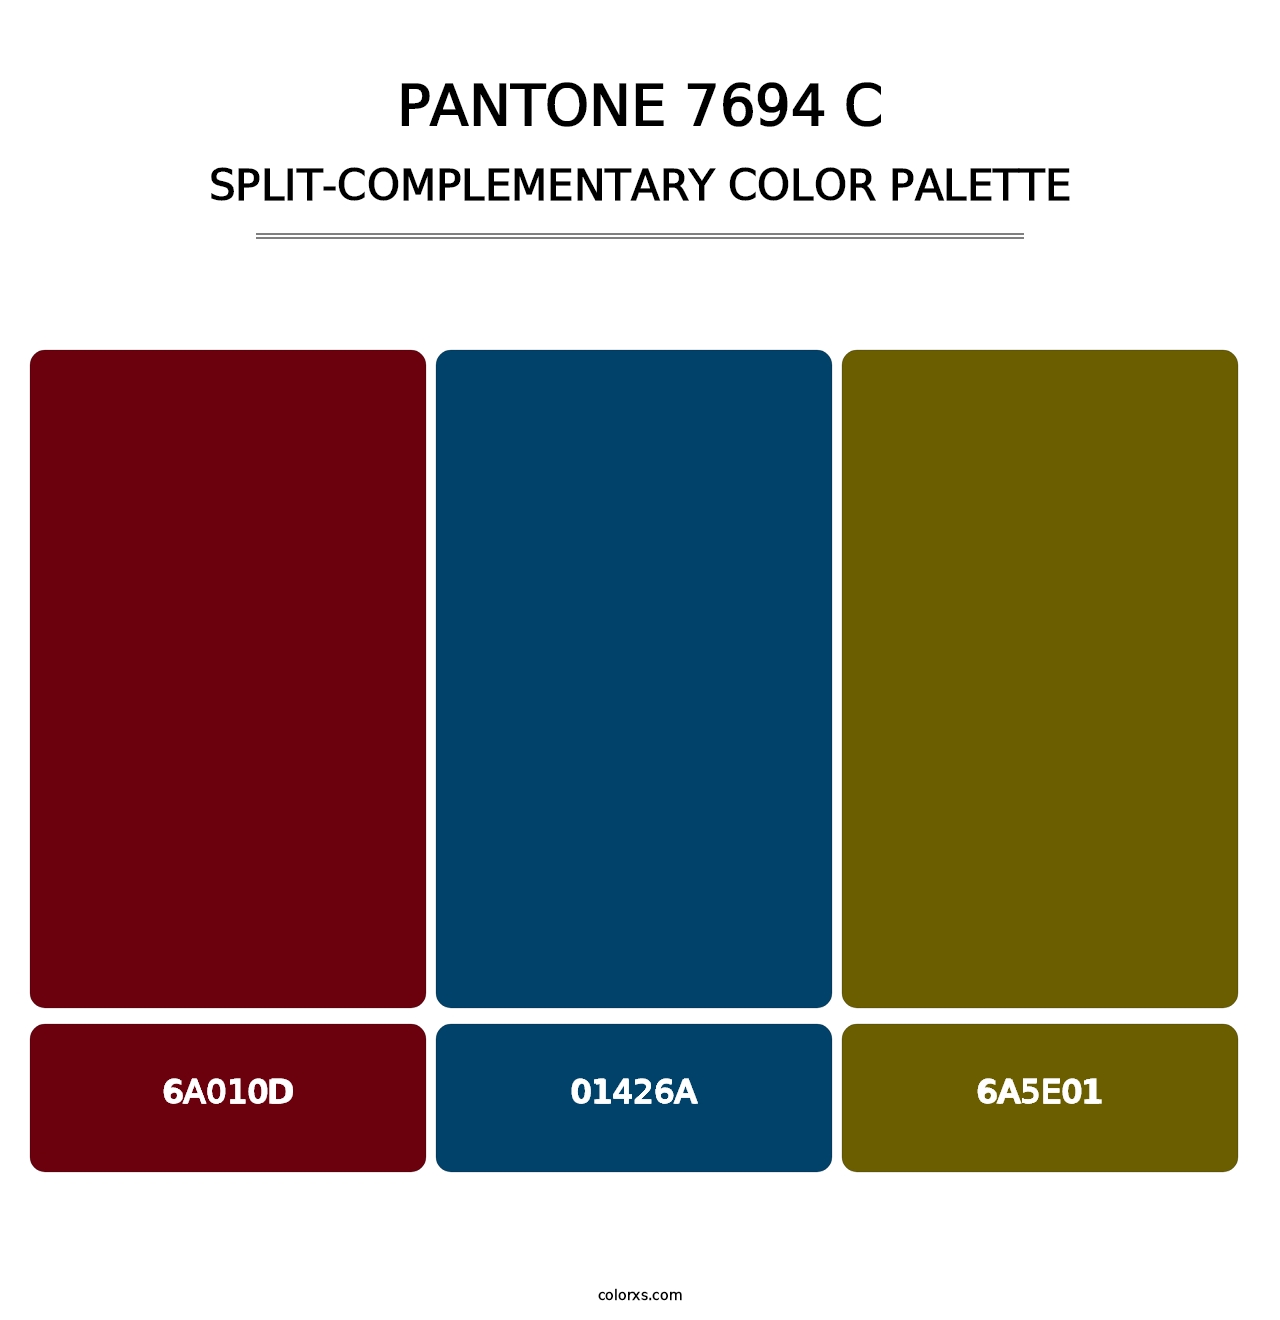 PANTONE 7694 C - Split-Complementary Color Palette